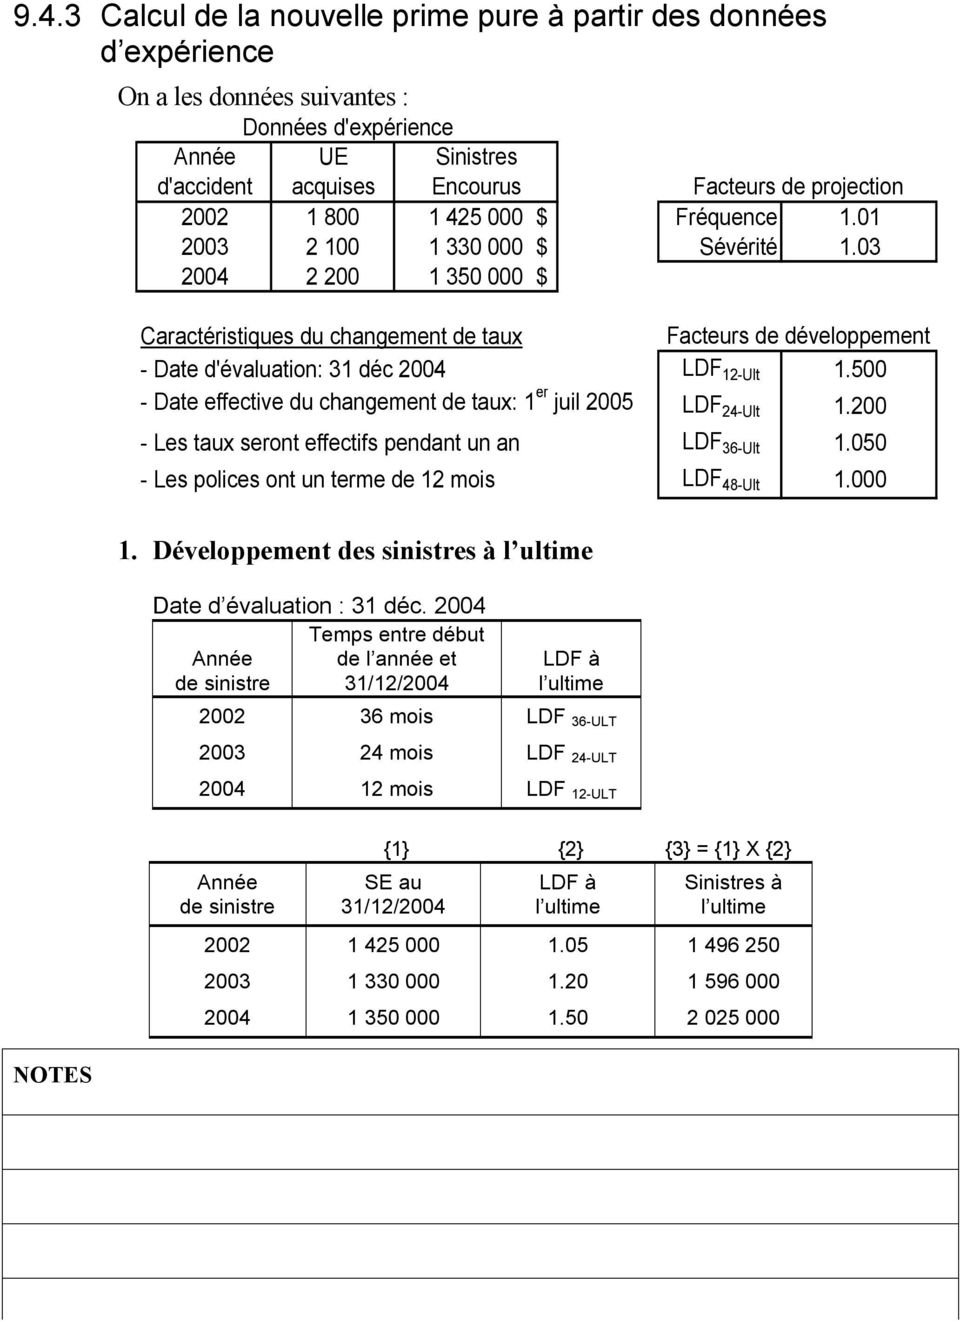 03 2004 2 200 1 350 000 $ Caractéristiques du changement de taux Facteurs de développement - Date d'évaluation: 31 déc 2004 LDF 12-Ult 1.